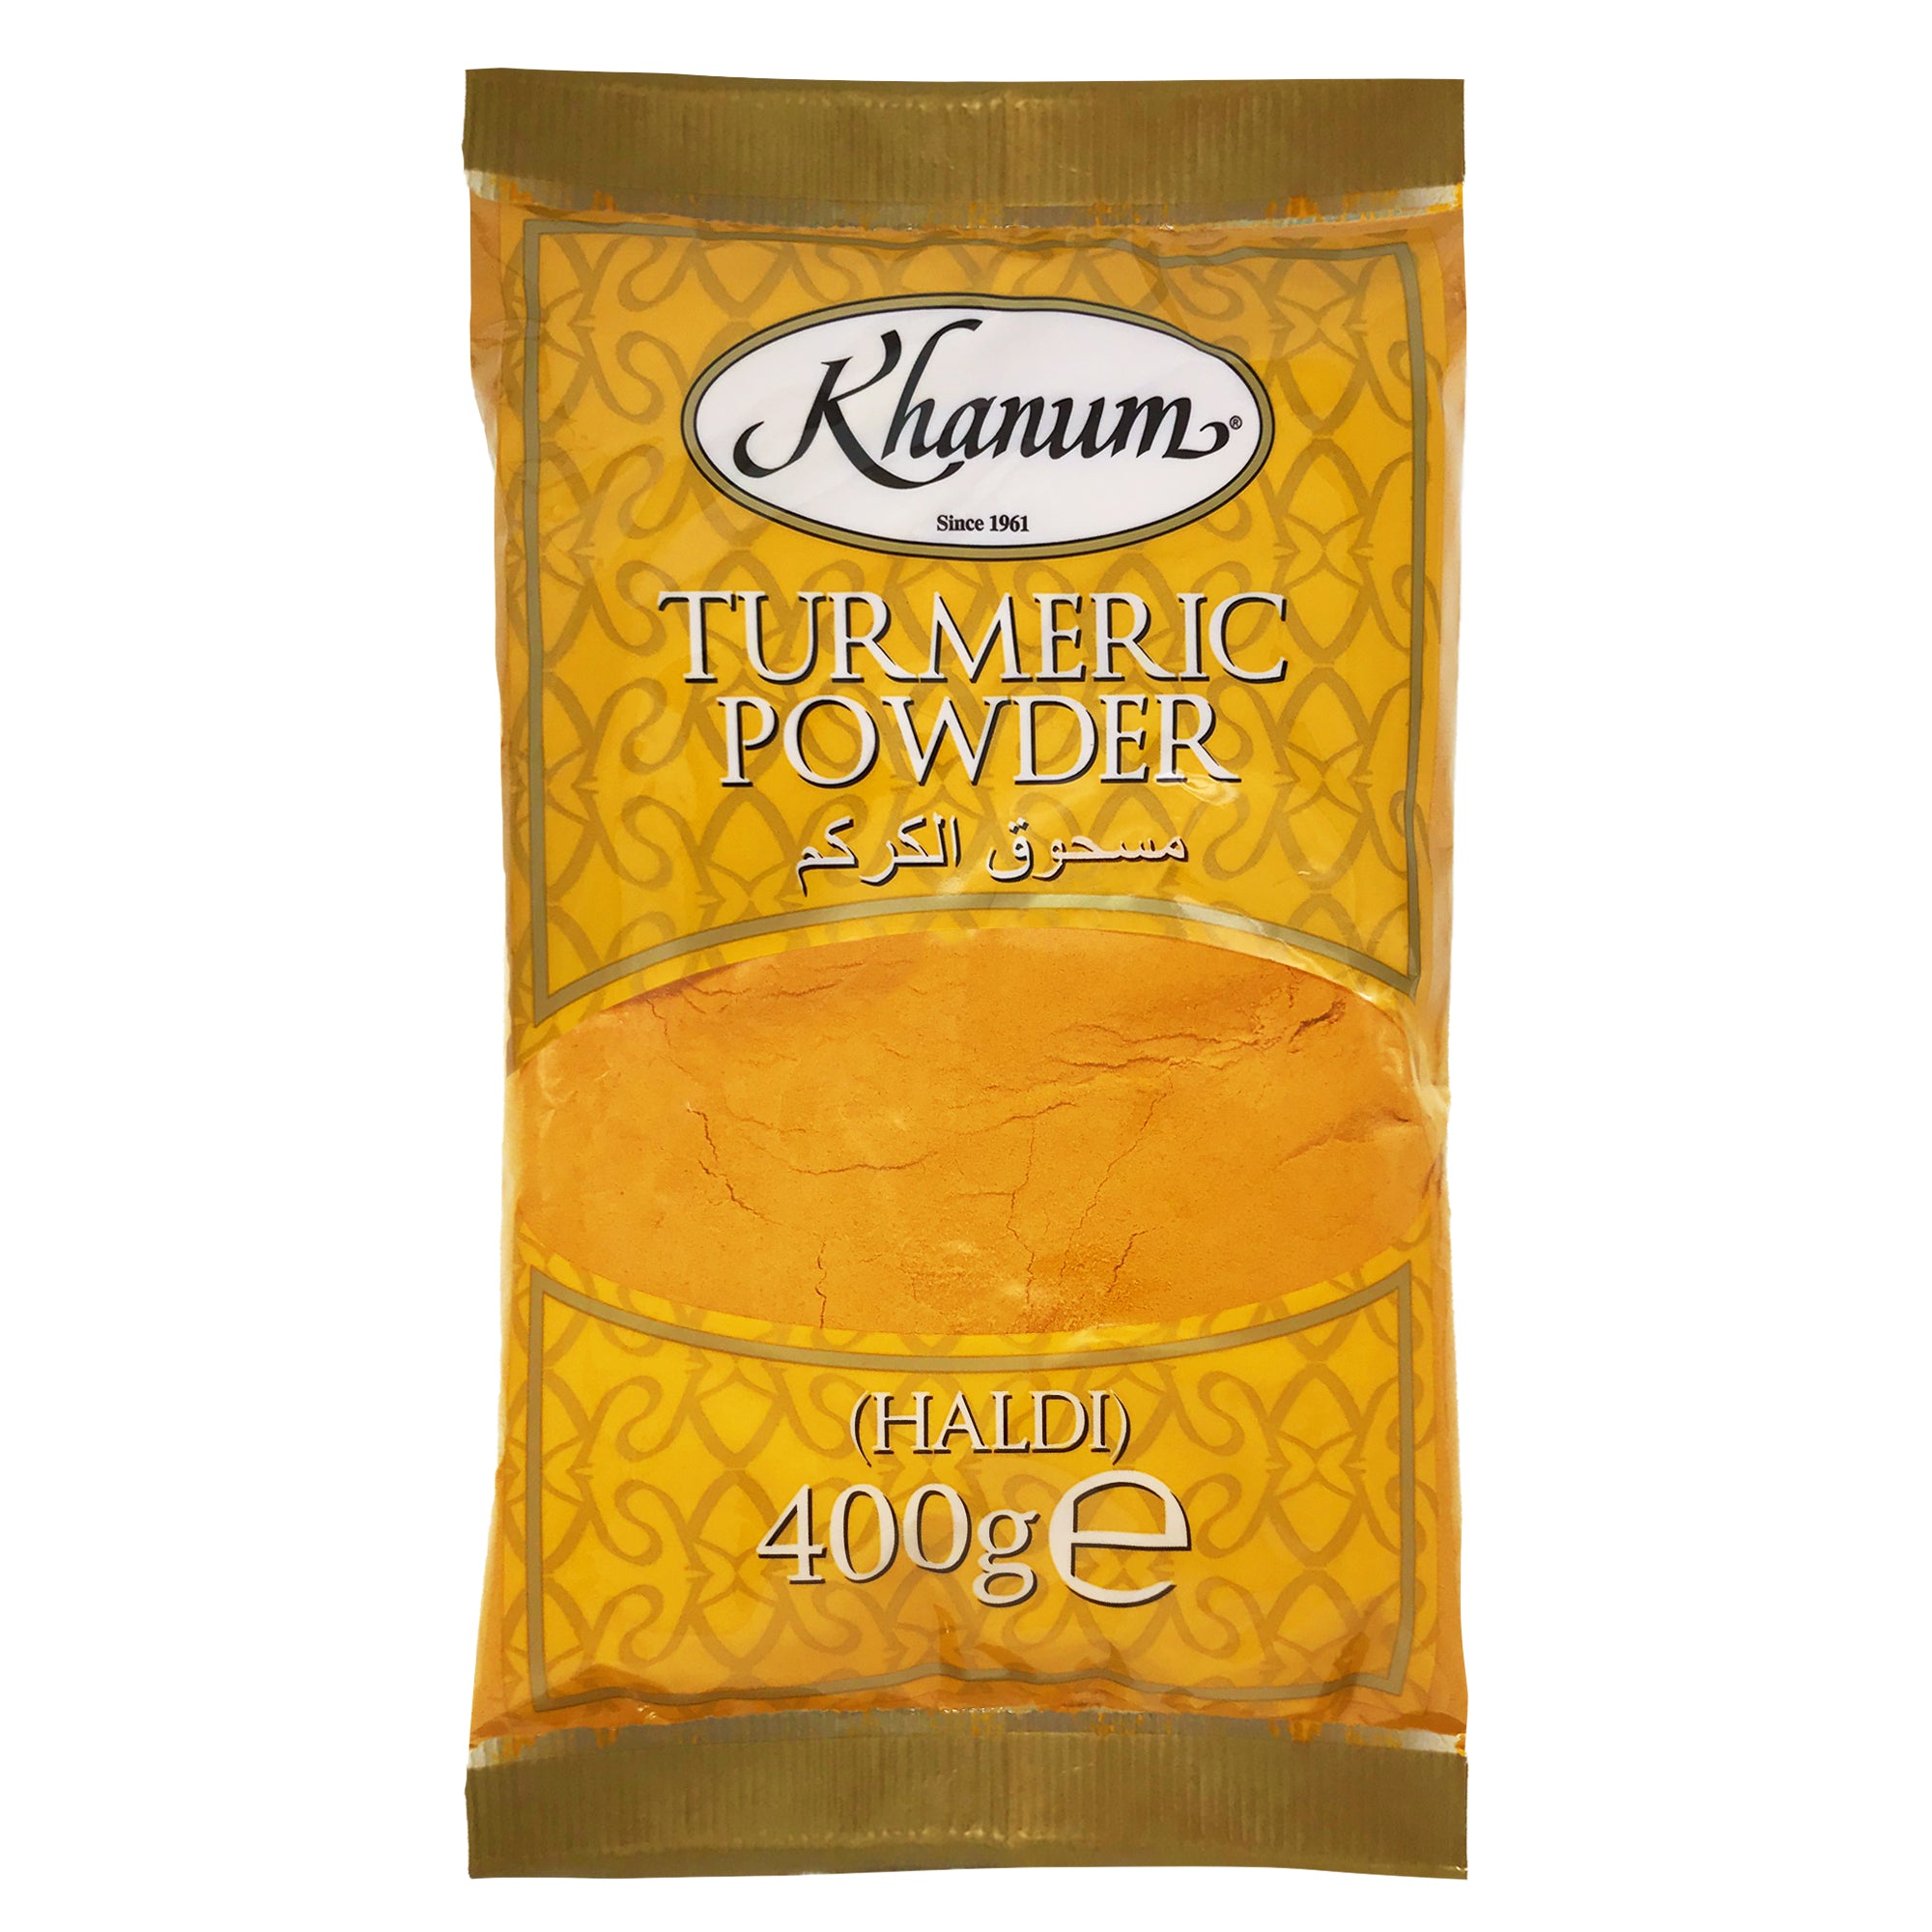 Khanum Turmeric Powder (HALDI) 10x400g